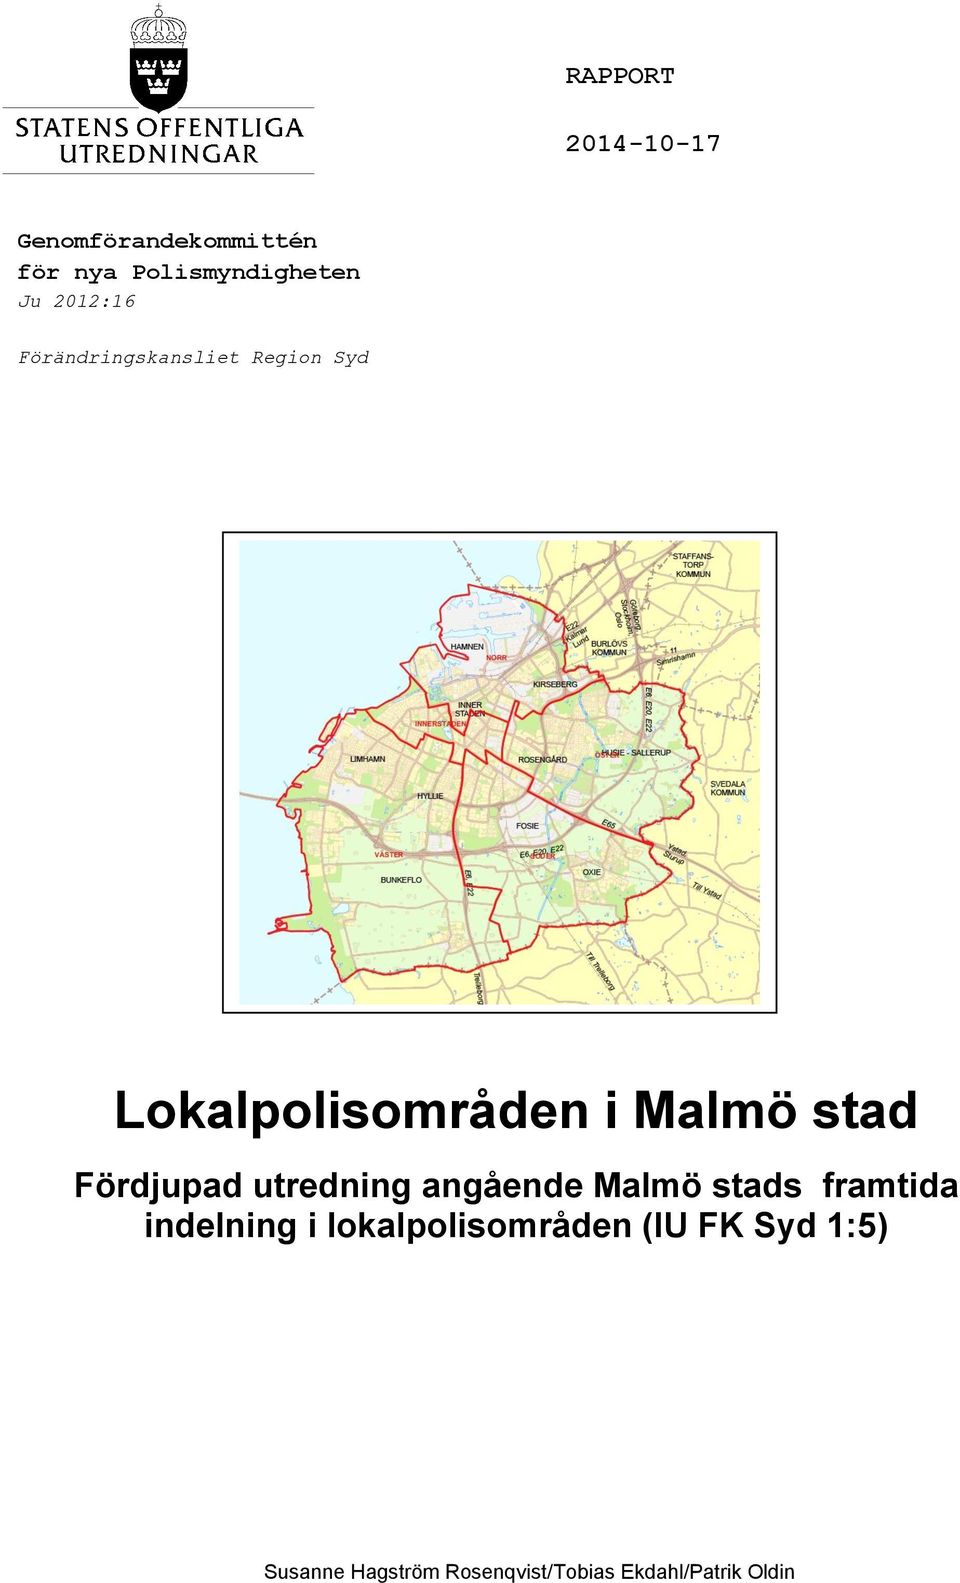 Fördjupad utredning angående Malmö stads framtida indelning i